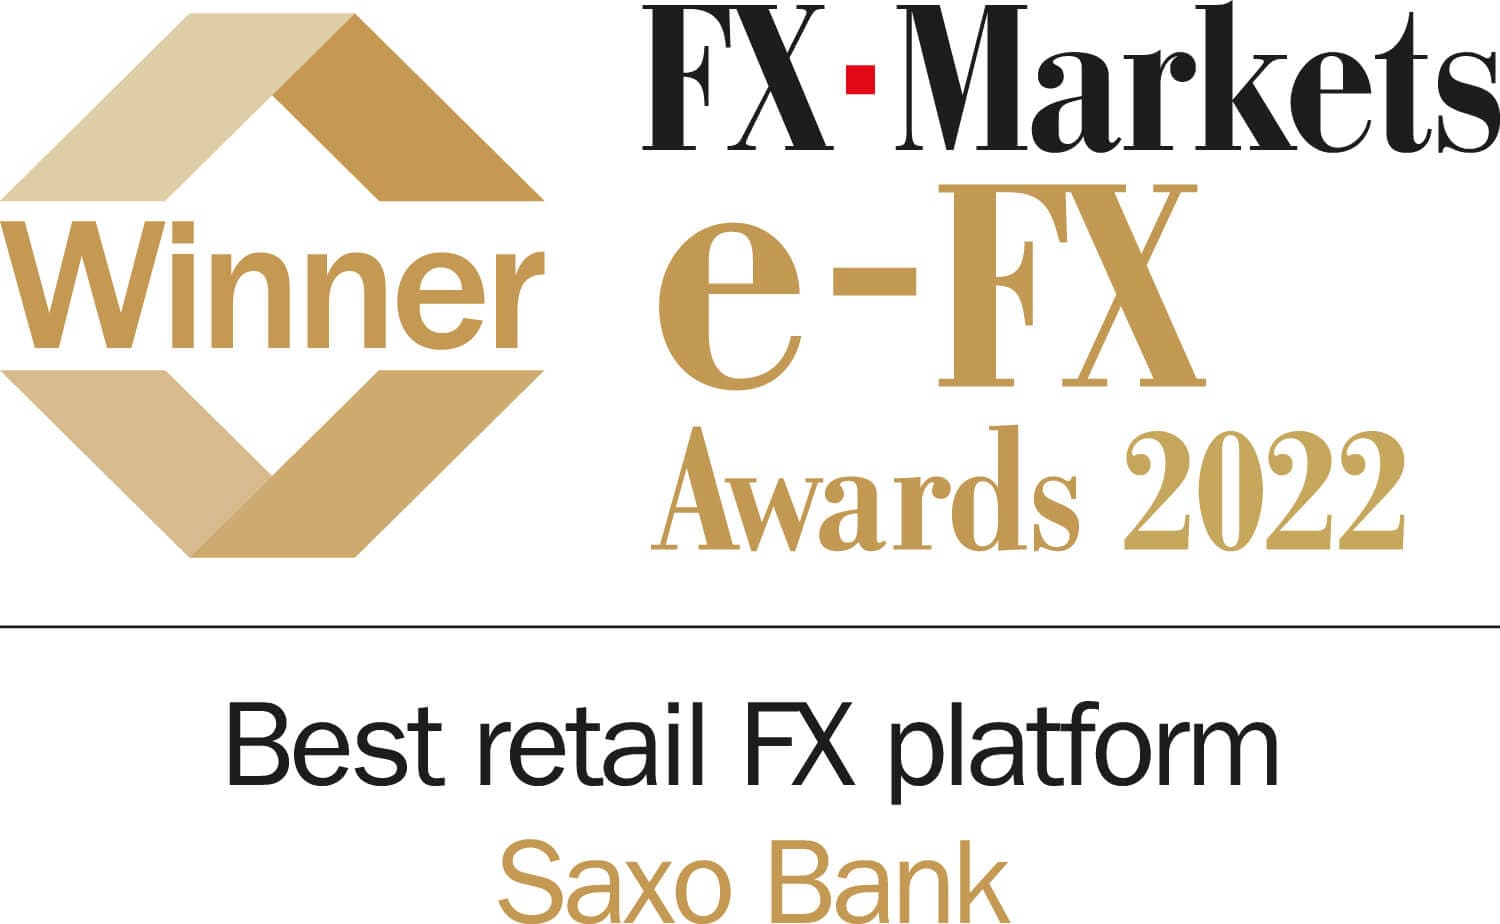 Best retail FX platform